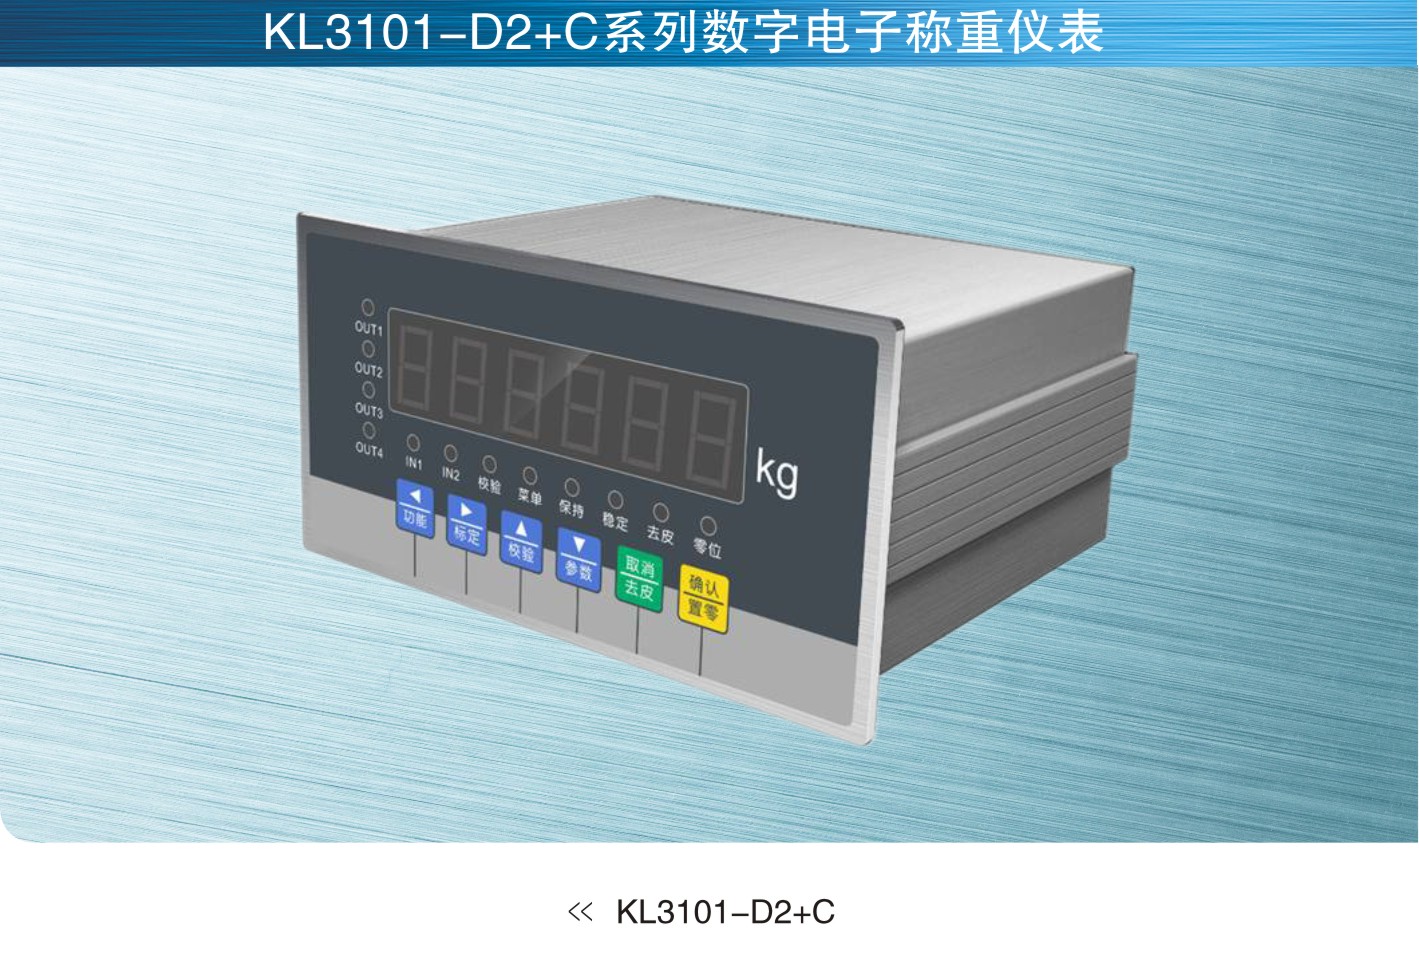 柯力keli KL3101-D2+C系列数字称重仪表